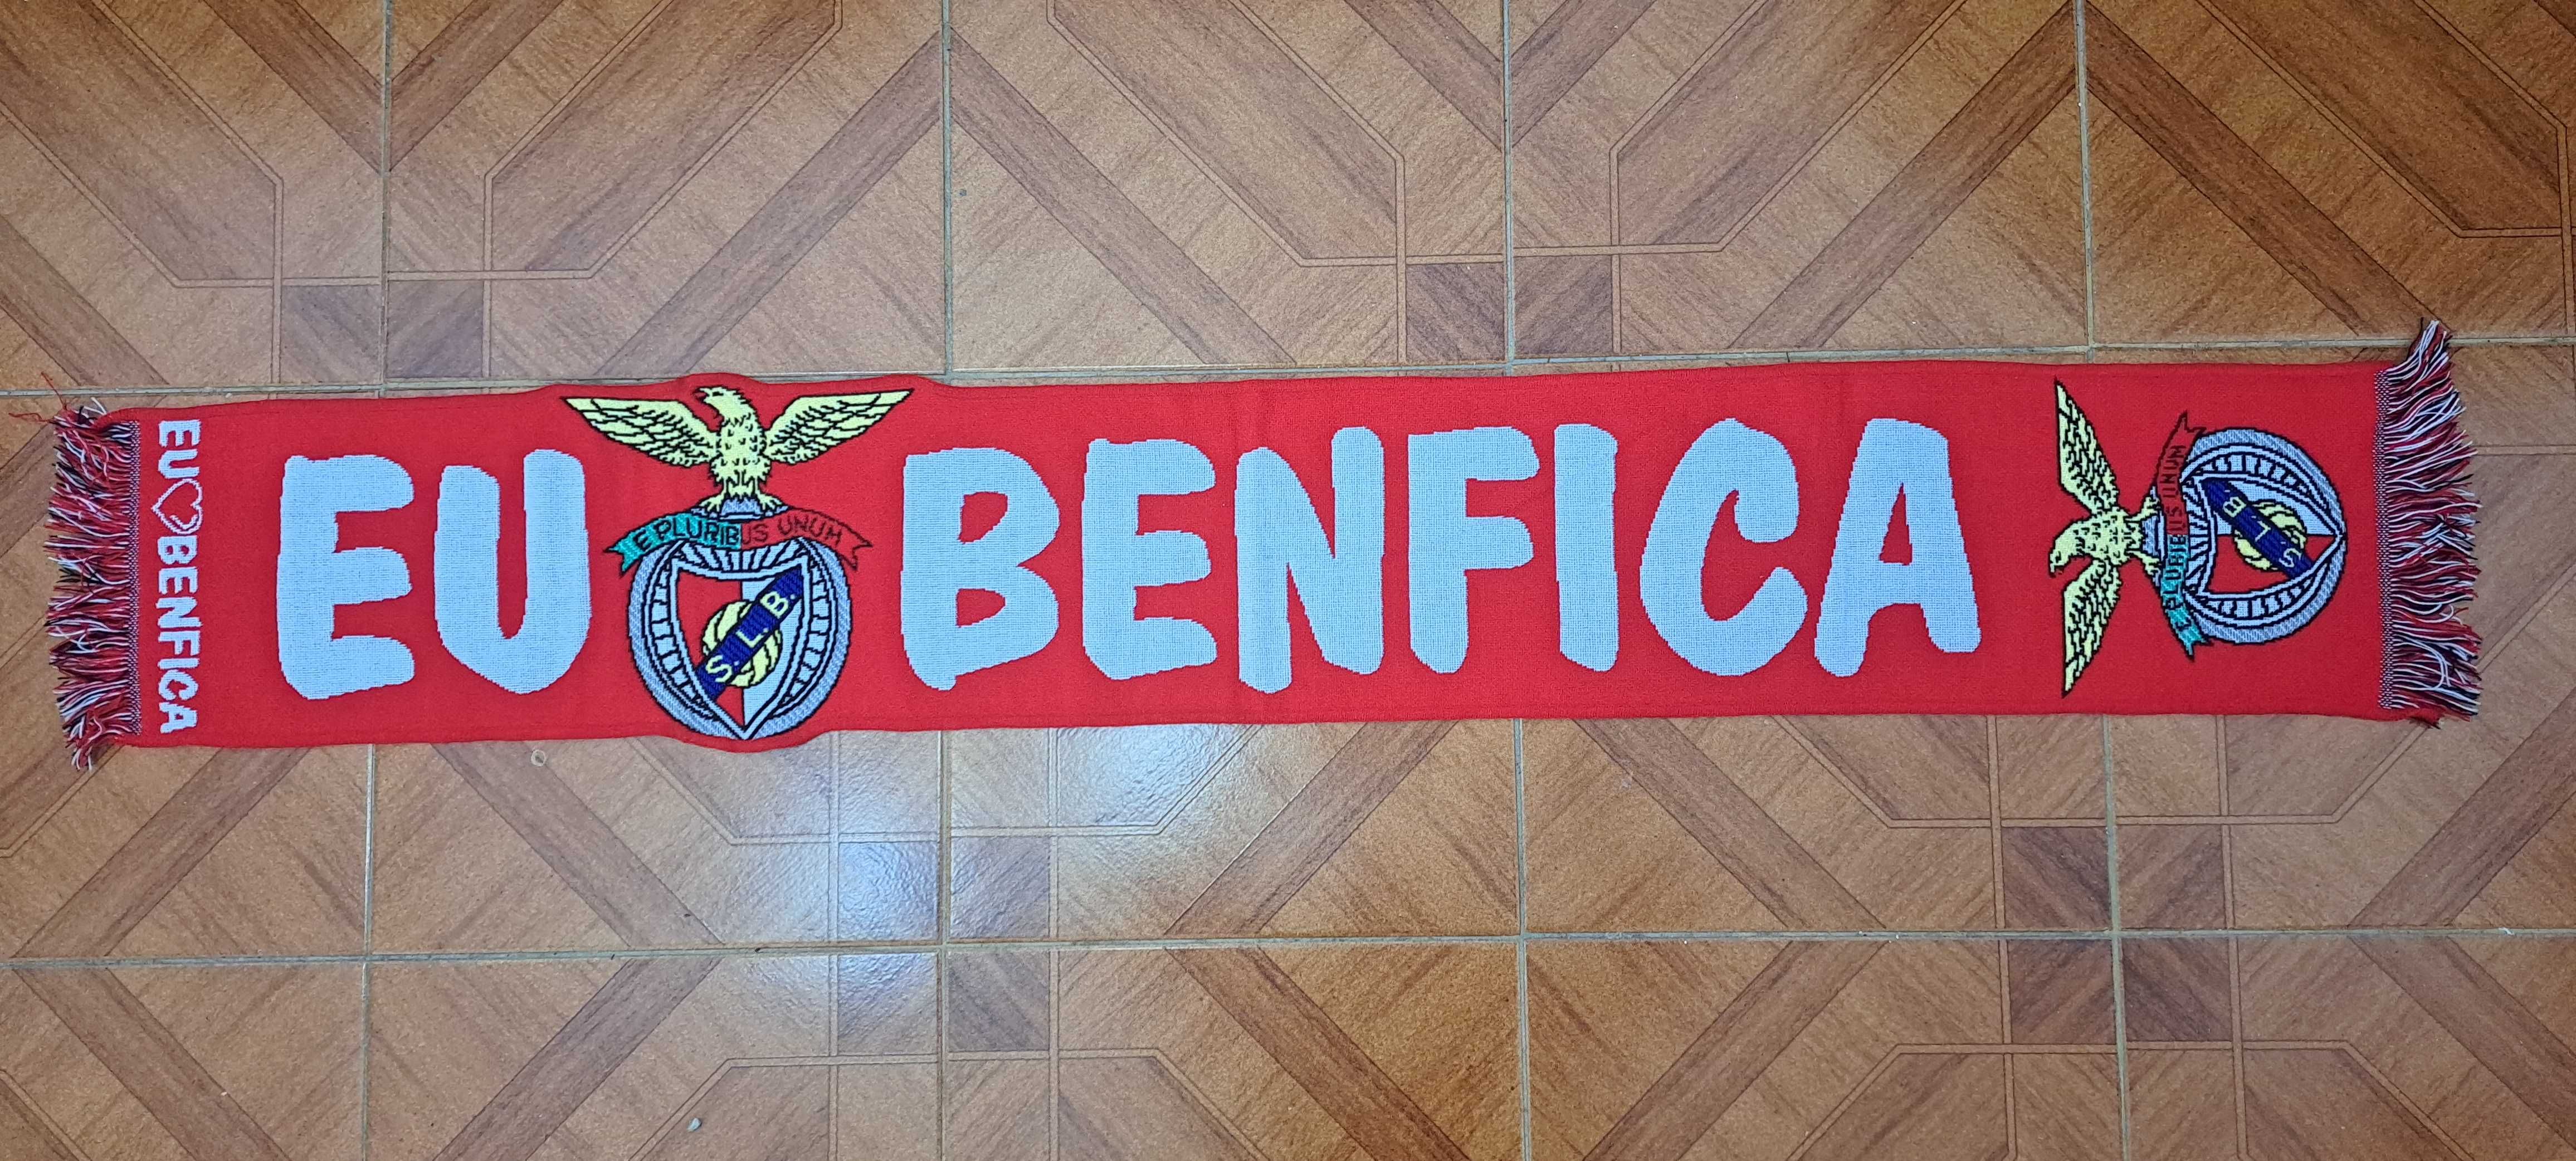 Cachecol do Sport Lisboa e Benfica - Eu Benfica